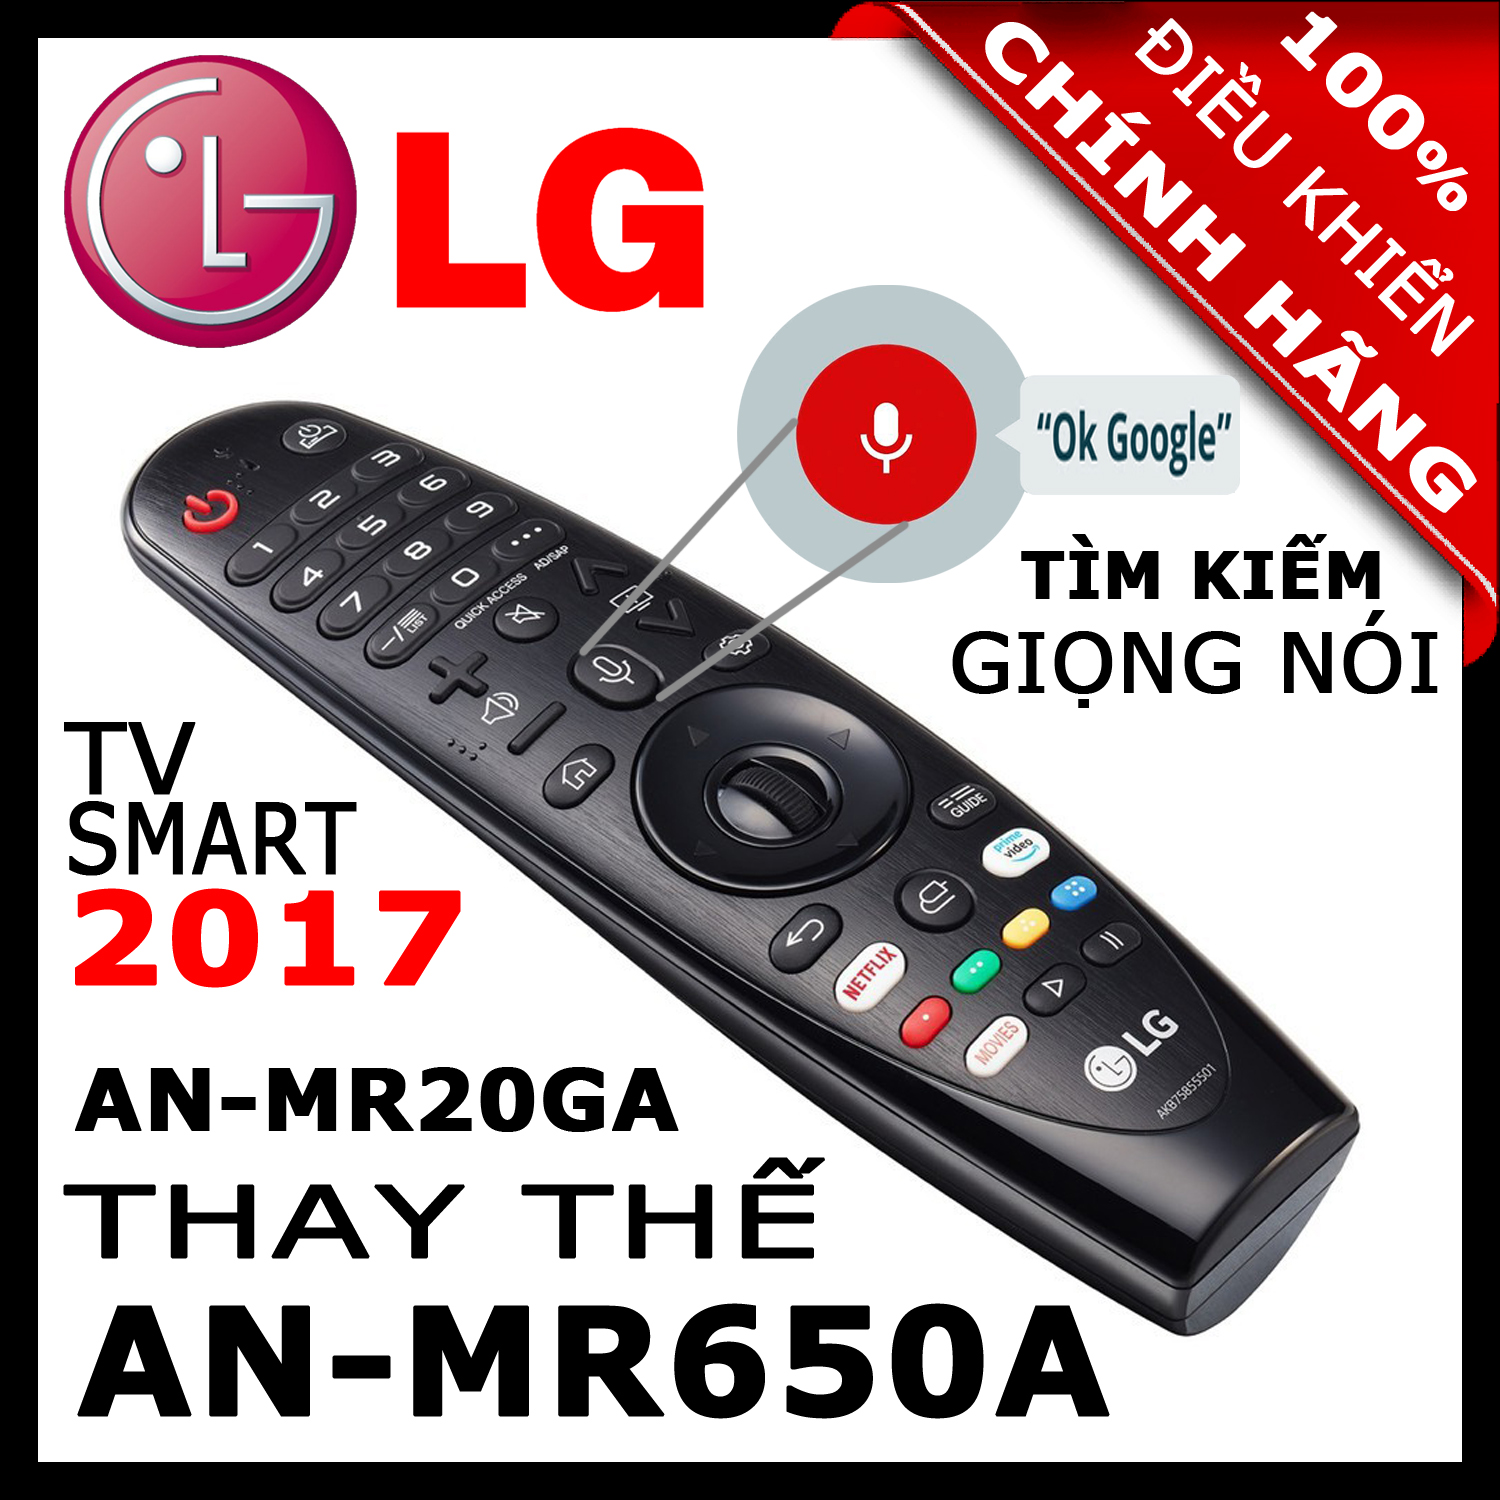 ĐIỀU KHIỂN Remote Tivi LG MR20GA thay thế MR19BA và MR18BA và MR650A có